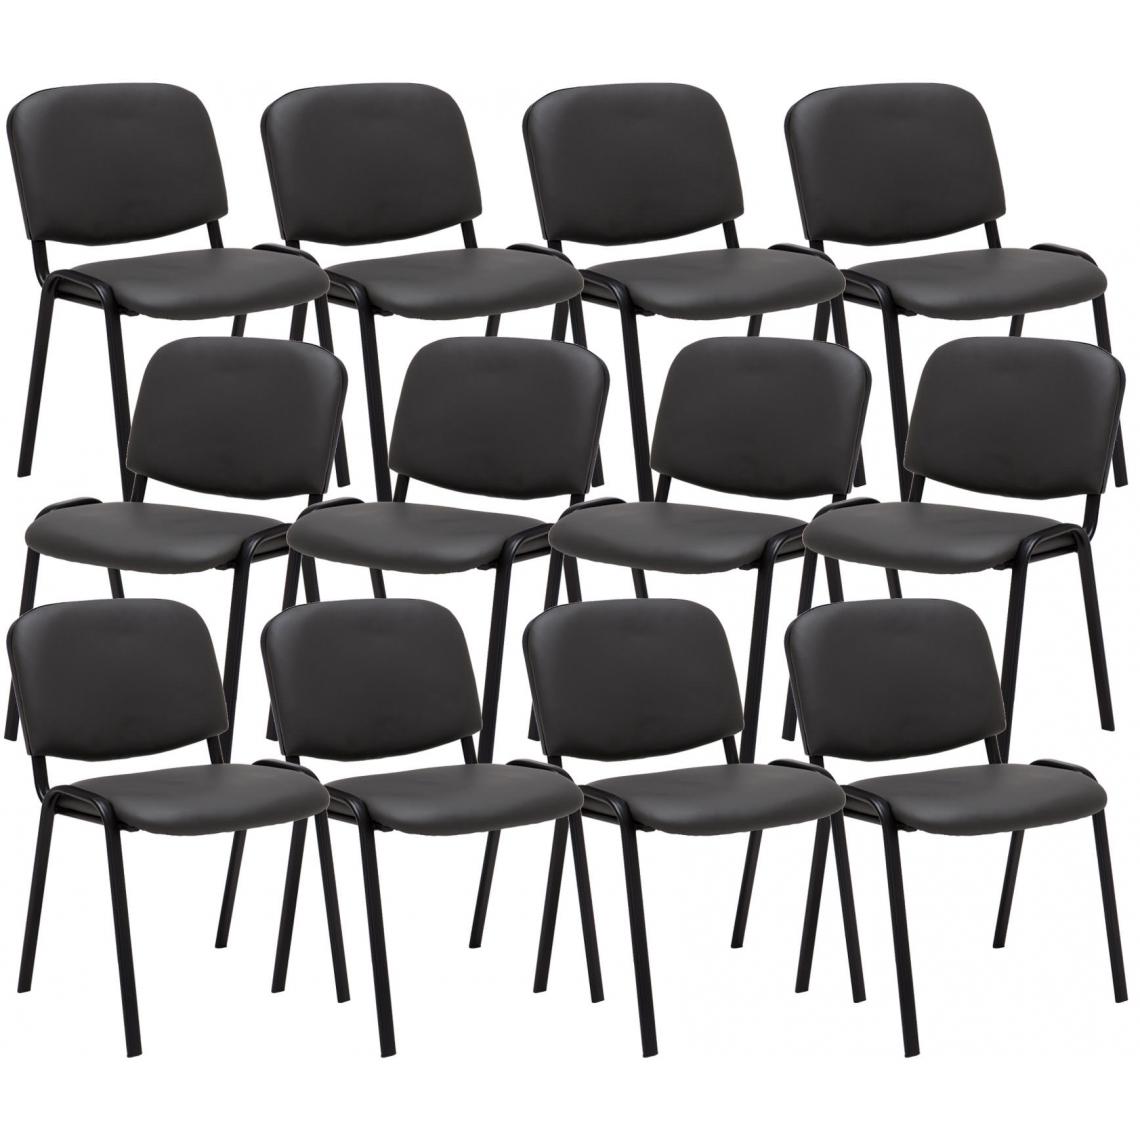 Icaverne - Admirable Ensemble de 12 chaises visiteurs selection Bamako en cuir artificiel couleur gris - Chaises